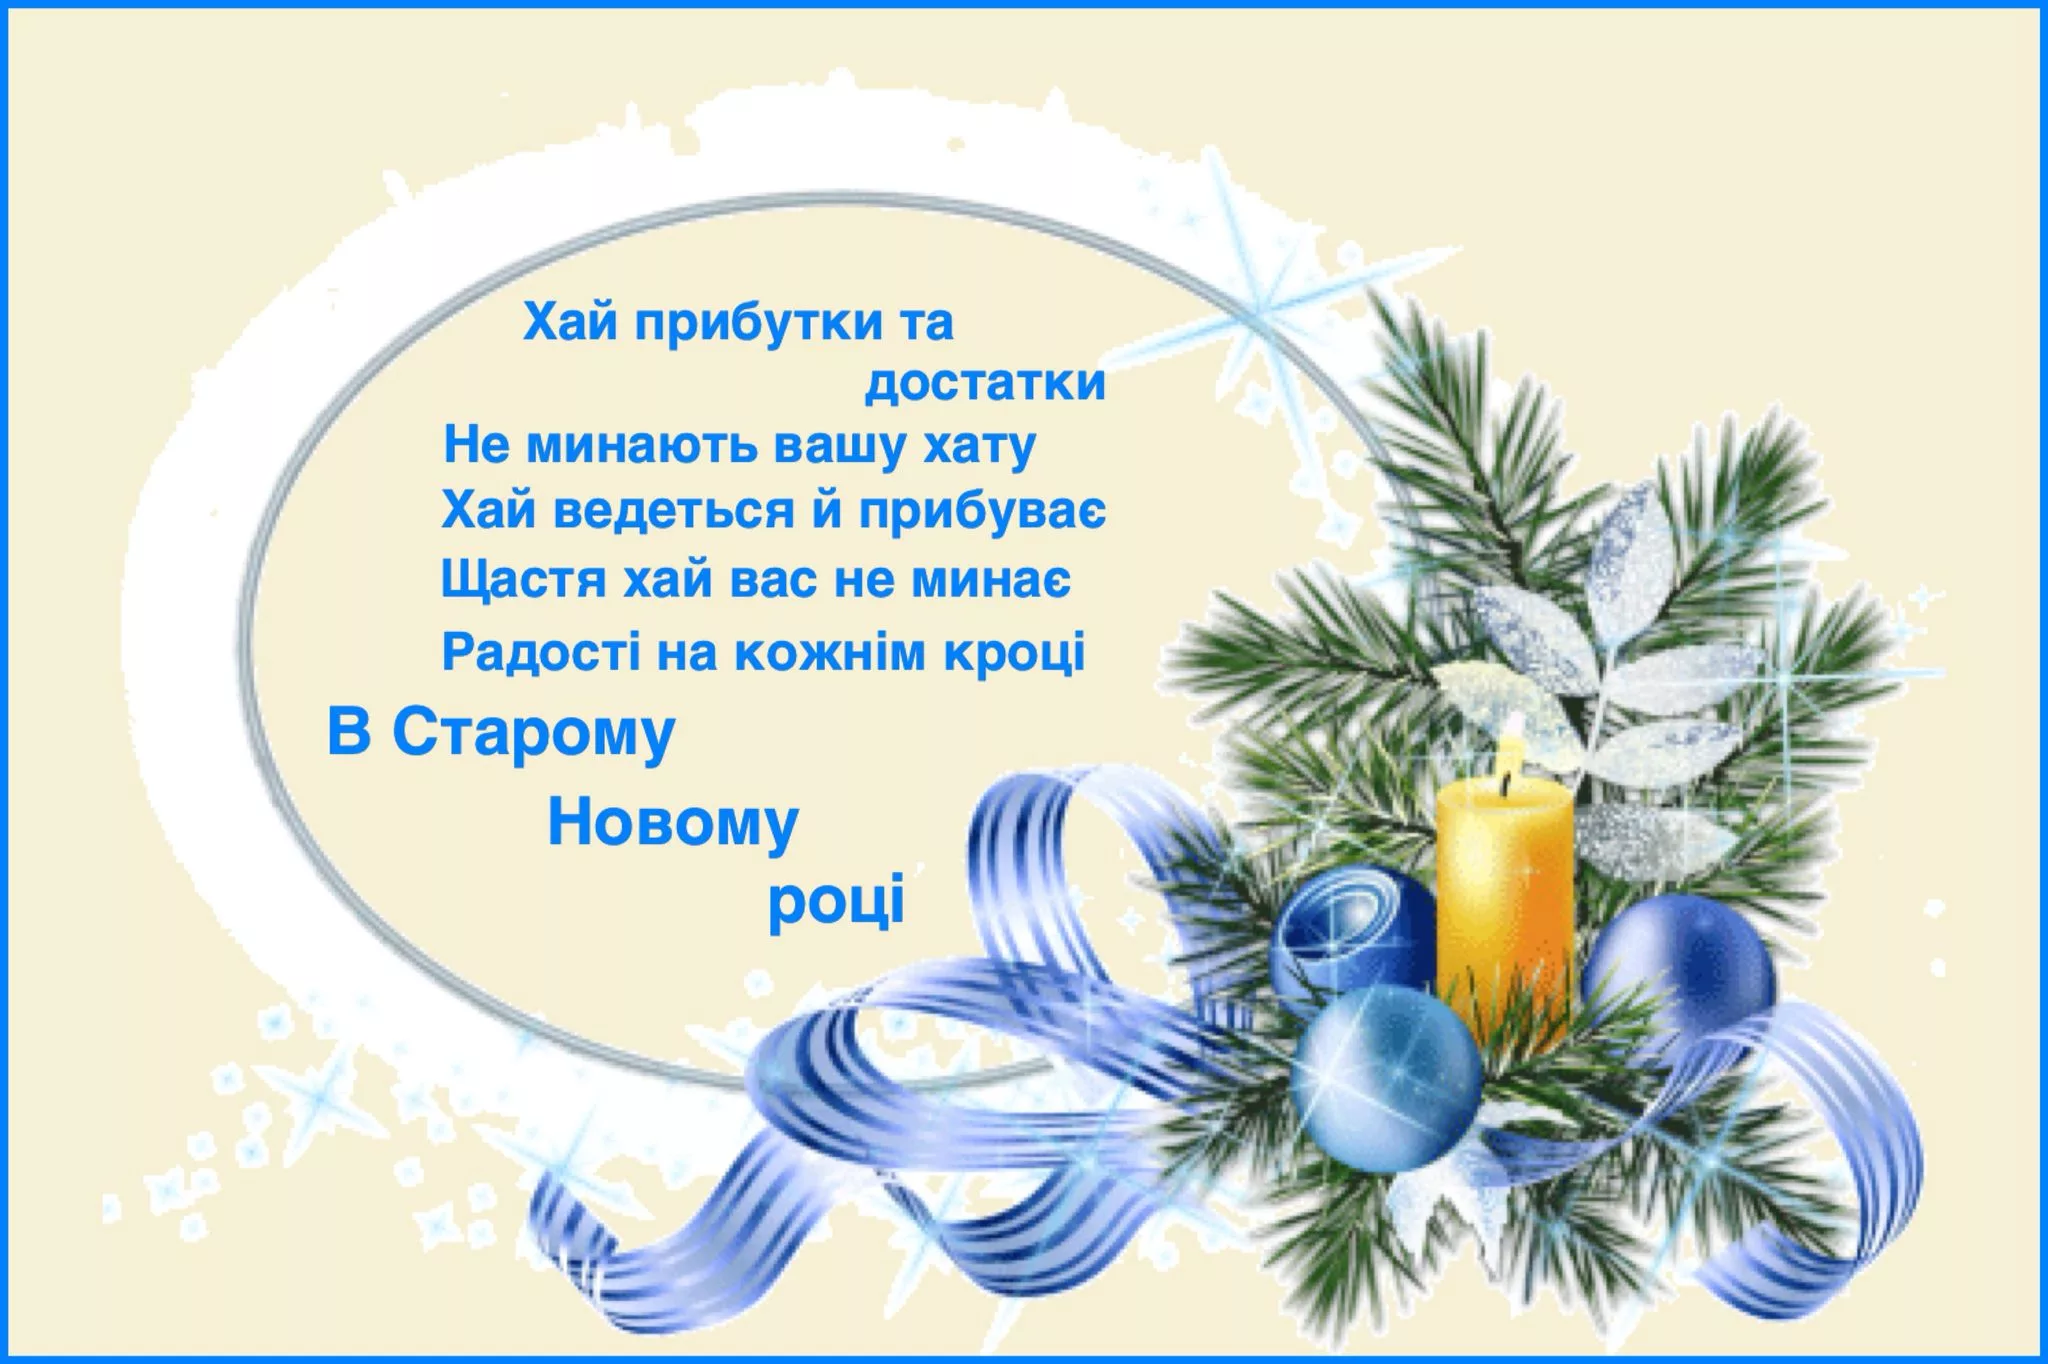 Поздравление со старым новым годом. Открытки со старым новым годом на украинском языке. Поздравление со старым новым годом на украинском языке. Вітаю з старим новим роком.